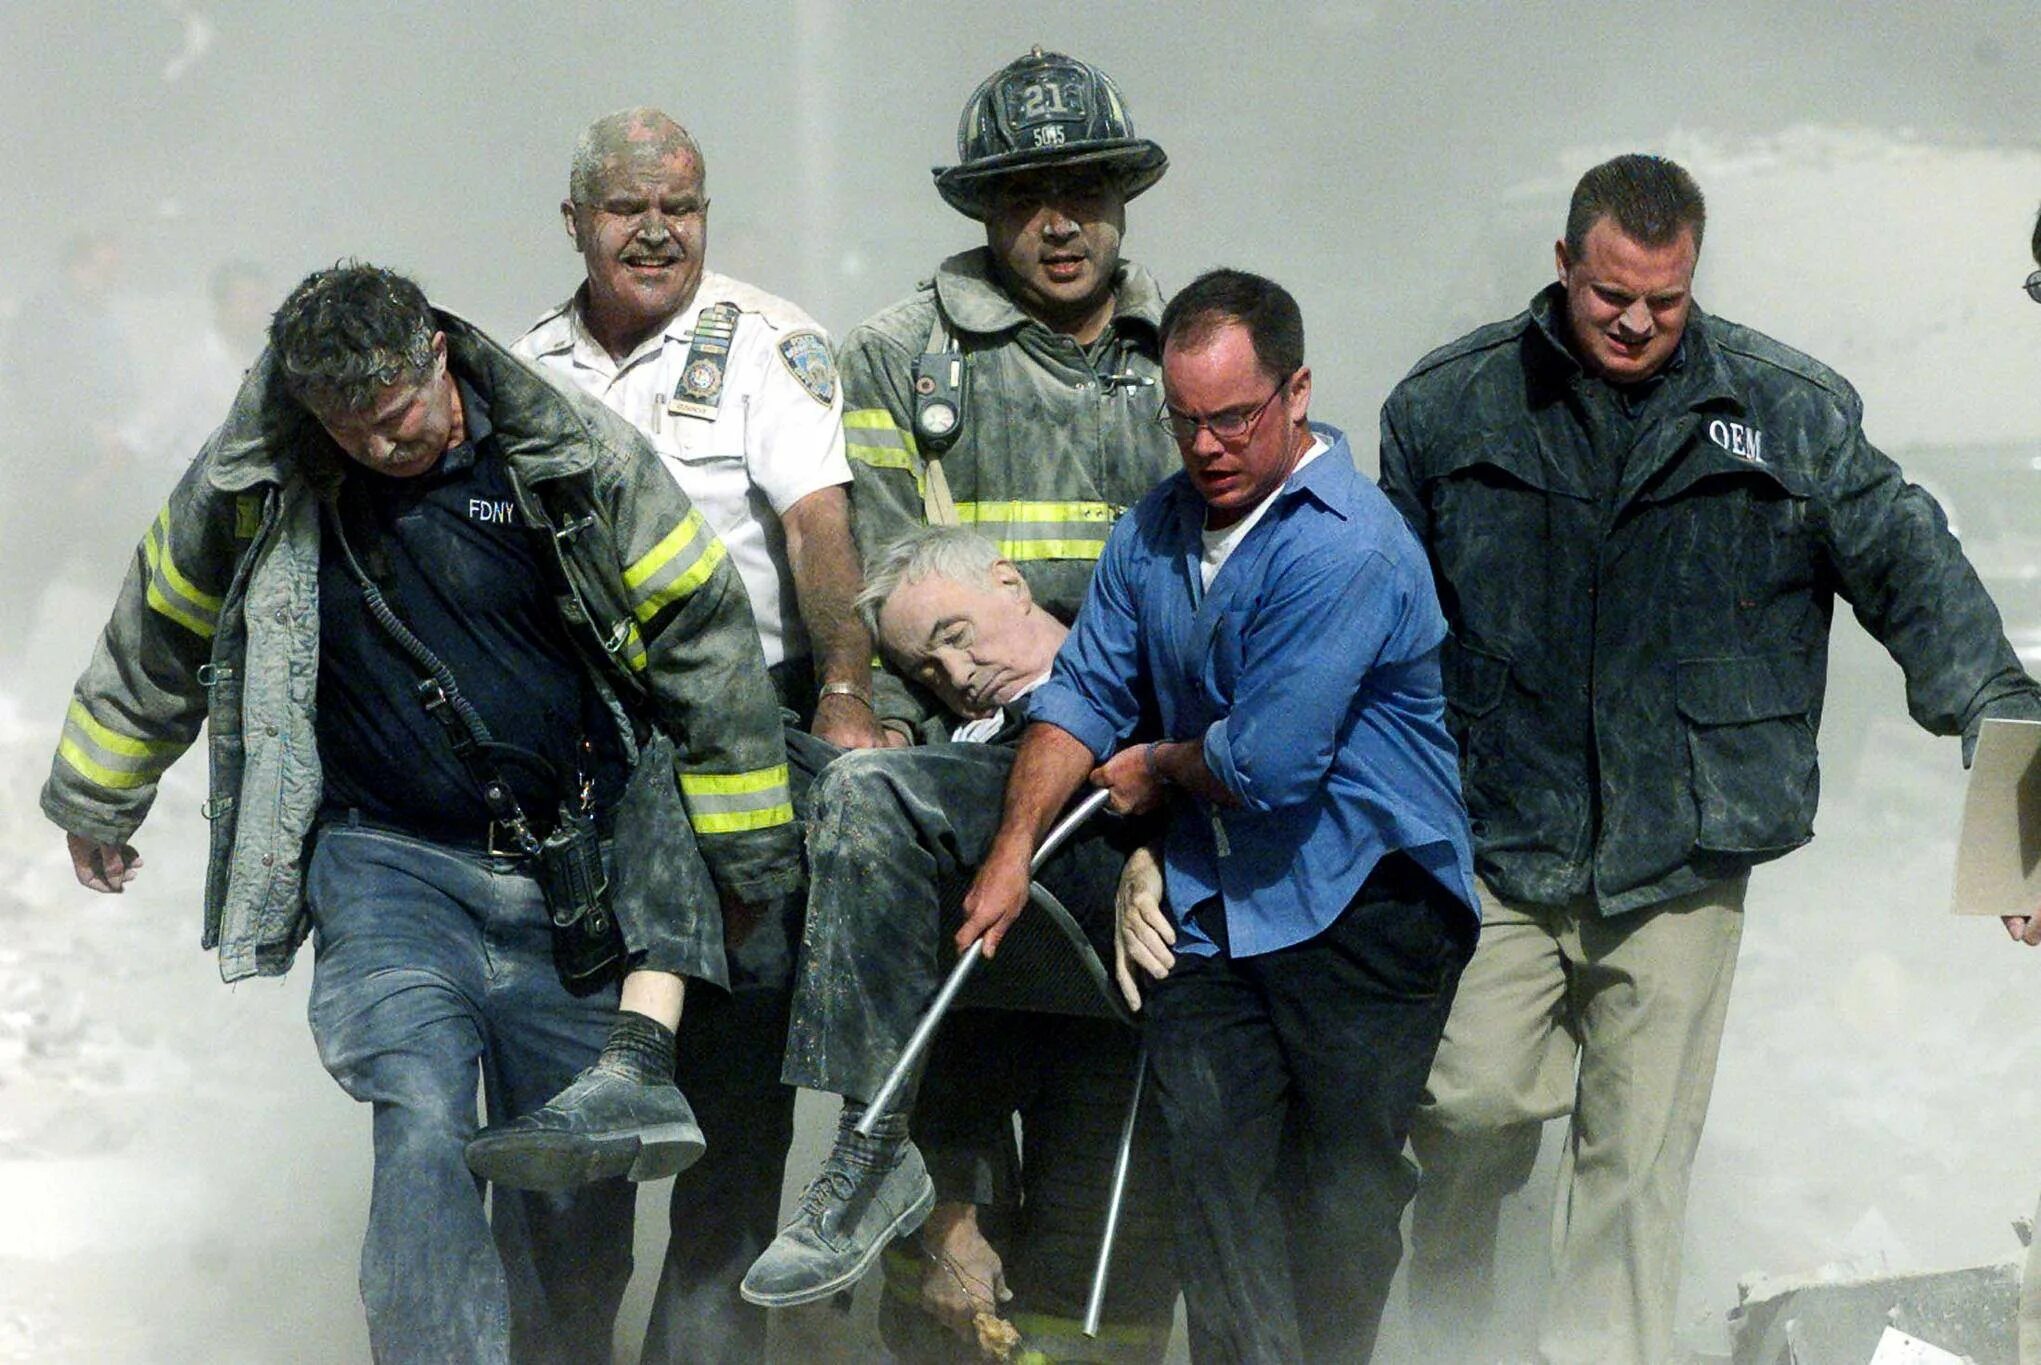 Спасатели 11 сентября 2001. Теракт 11 сентября жертвы.